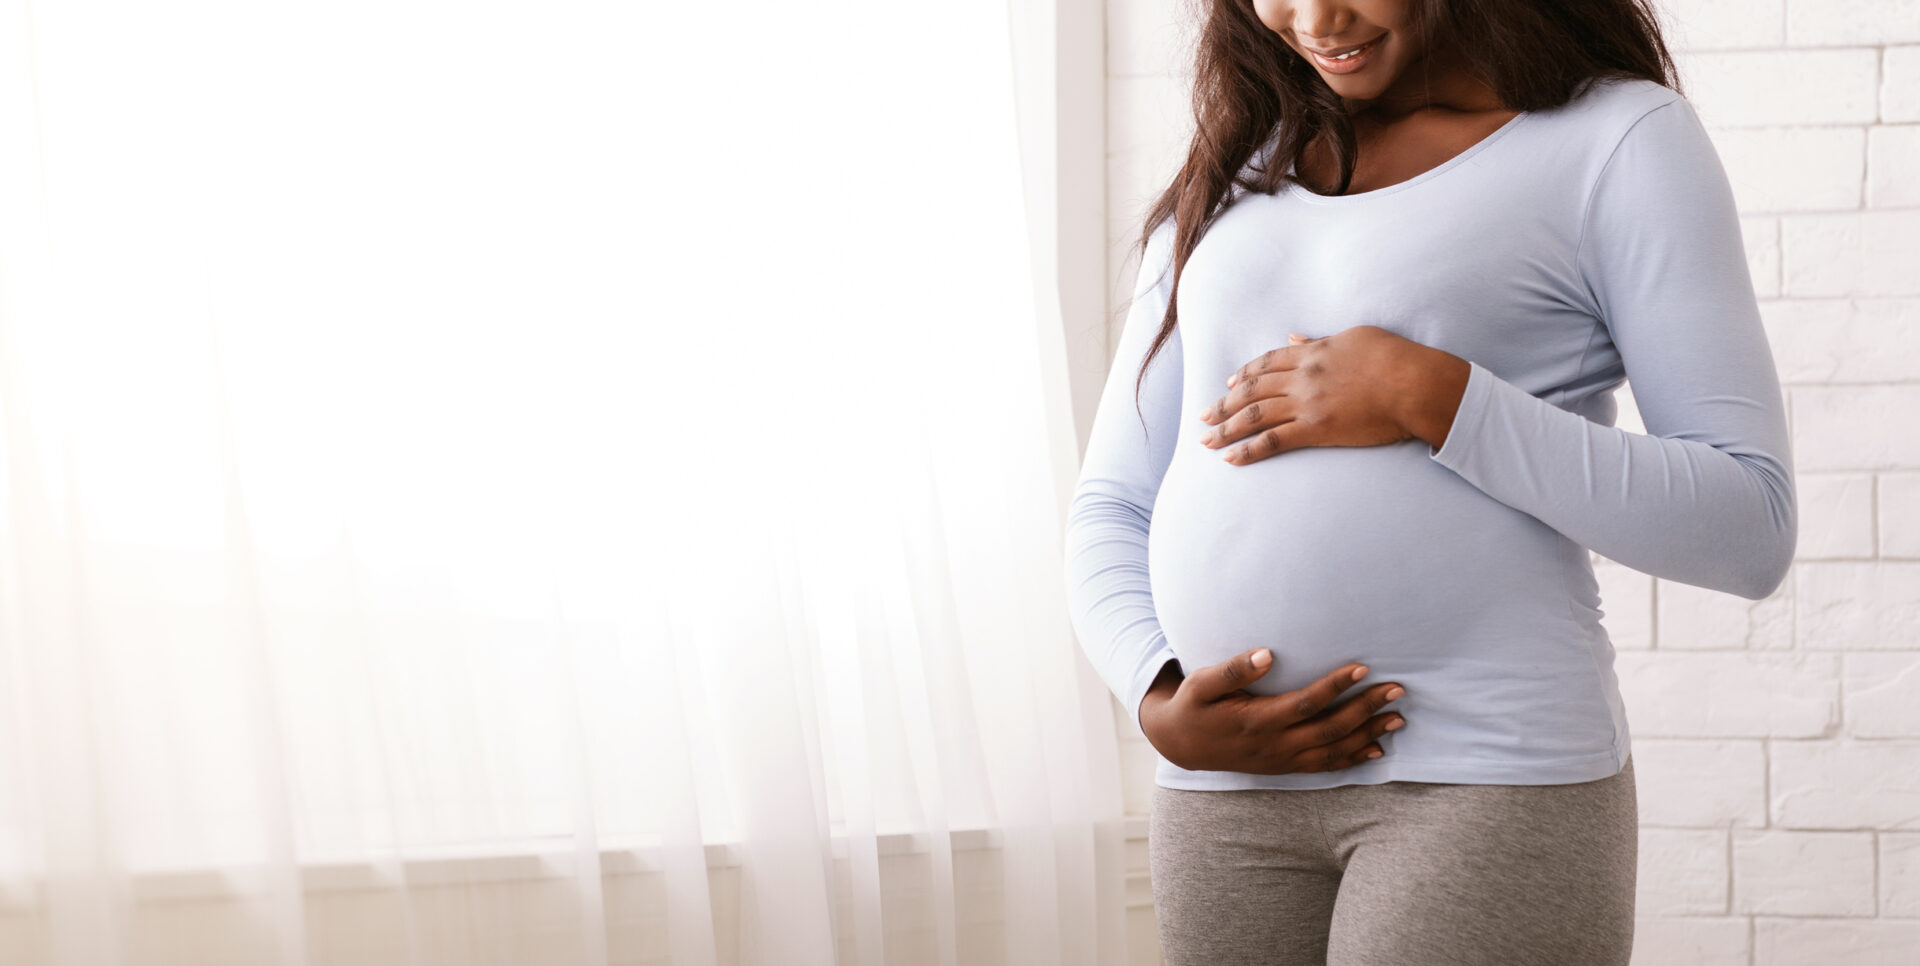 يُصنف الثاليدومايد على أنه ماسخ ويسبب تشوهات خلقية عندما تتناوله النساء الحوامل.